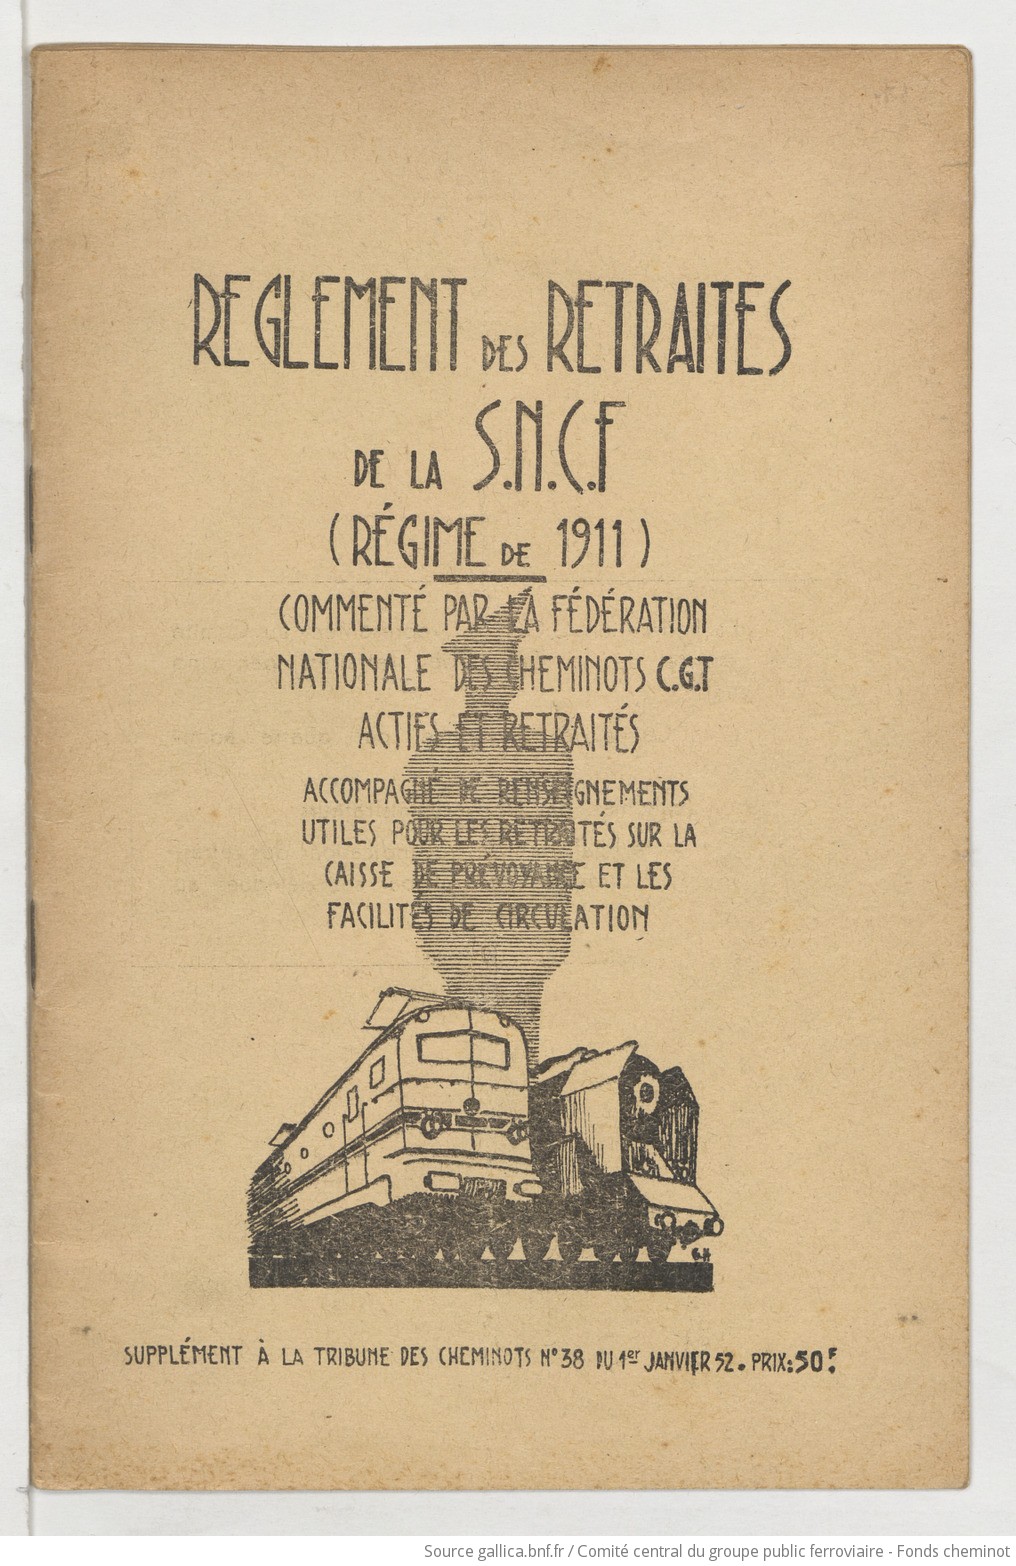 Règlement des retraites de la SNCF (régime de 1911) commenté par la Fédération nationale des cheminots CGT actifs et retraités. La Tribune des cheminots, supplément au n°38, 1er janvier 1952